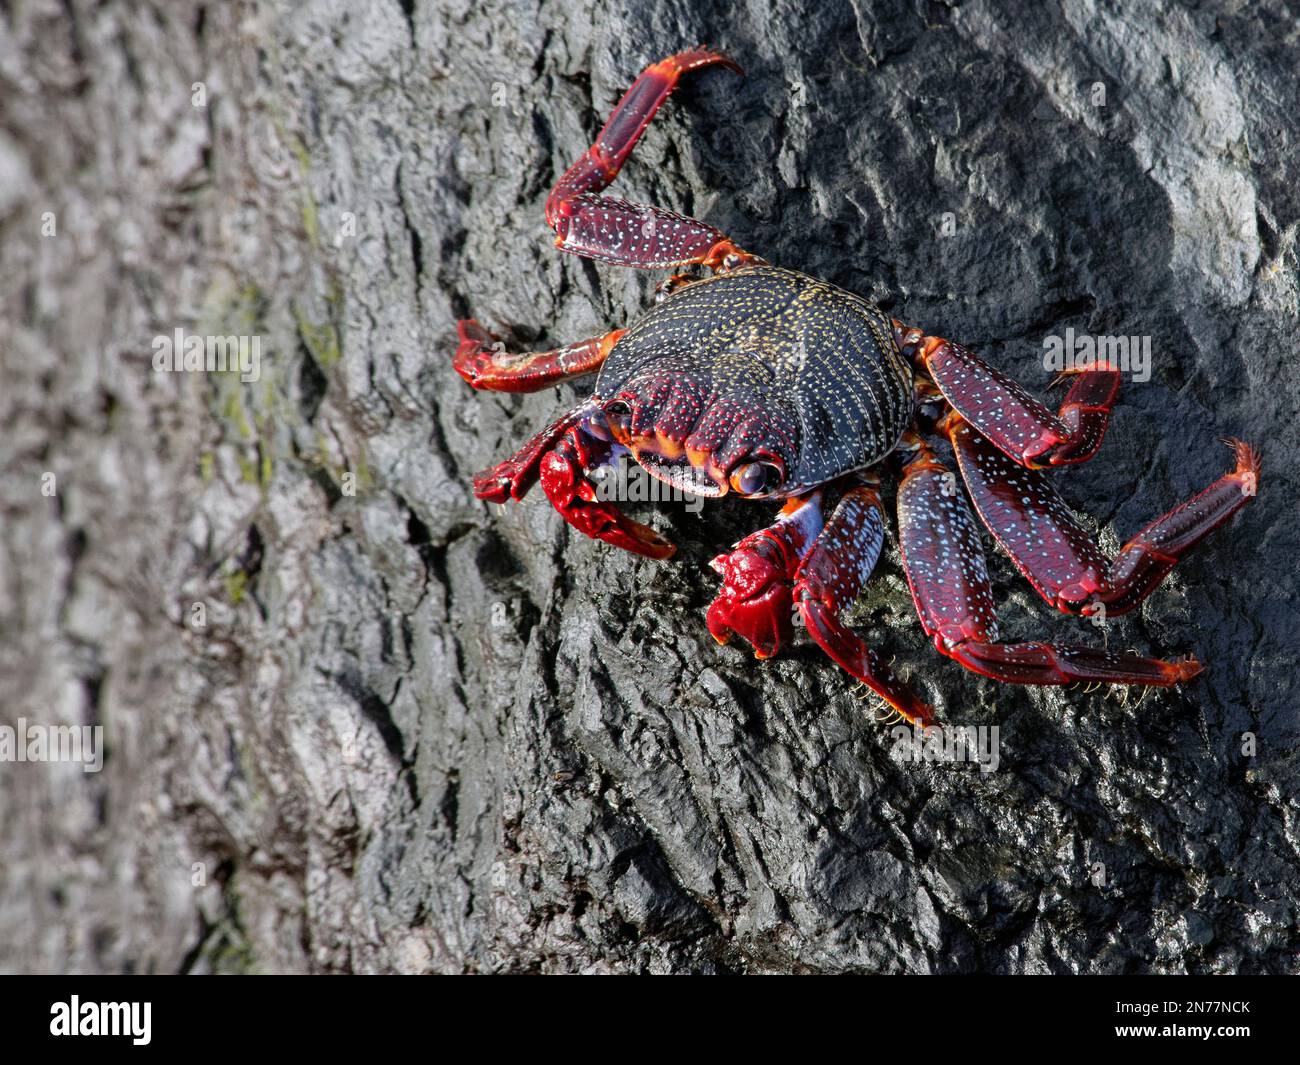 Crabe rouge (Grapsus adscensionis) algue paître des rochers de la mer, Ténérife, Îles Canaries, octobre. Banque D'Images